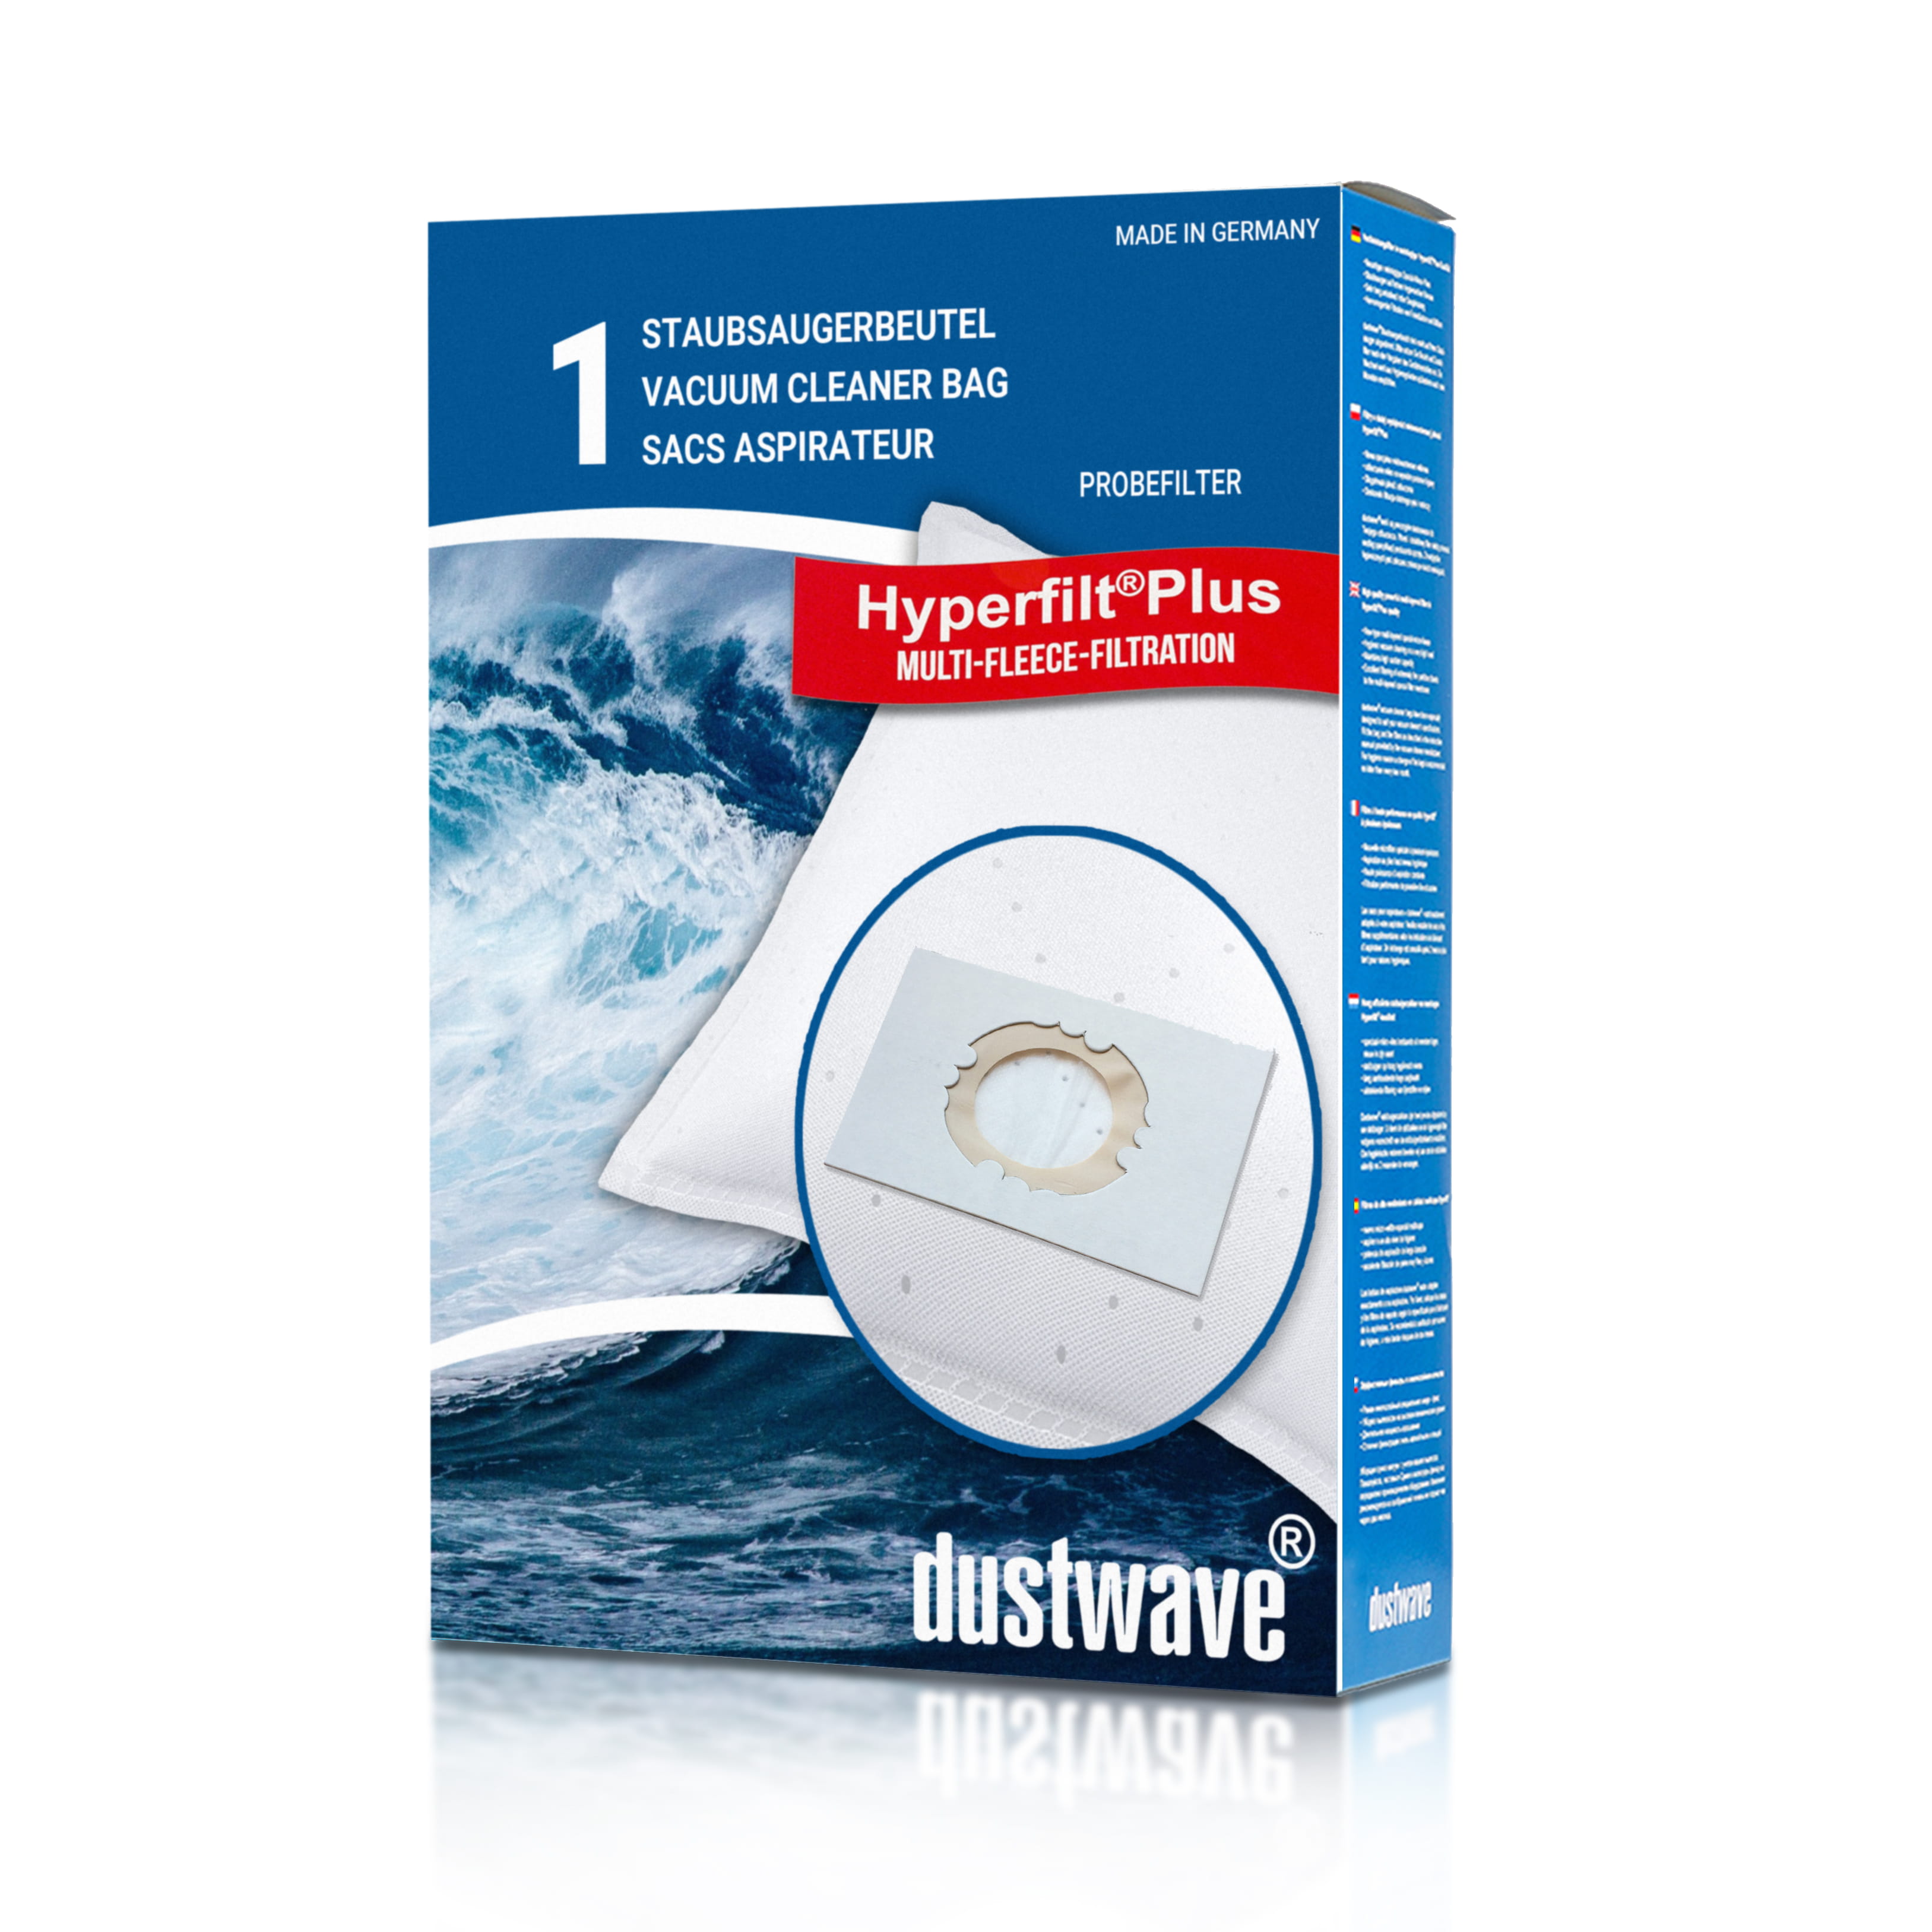 Dustwave® 1 Staubsaugerbeutel für AEG Multi Pro 1400 - hocheffizient, mehrlagiges Mikrovlies mit Hygieneverschluss - Made in Germany